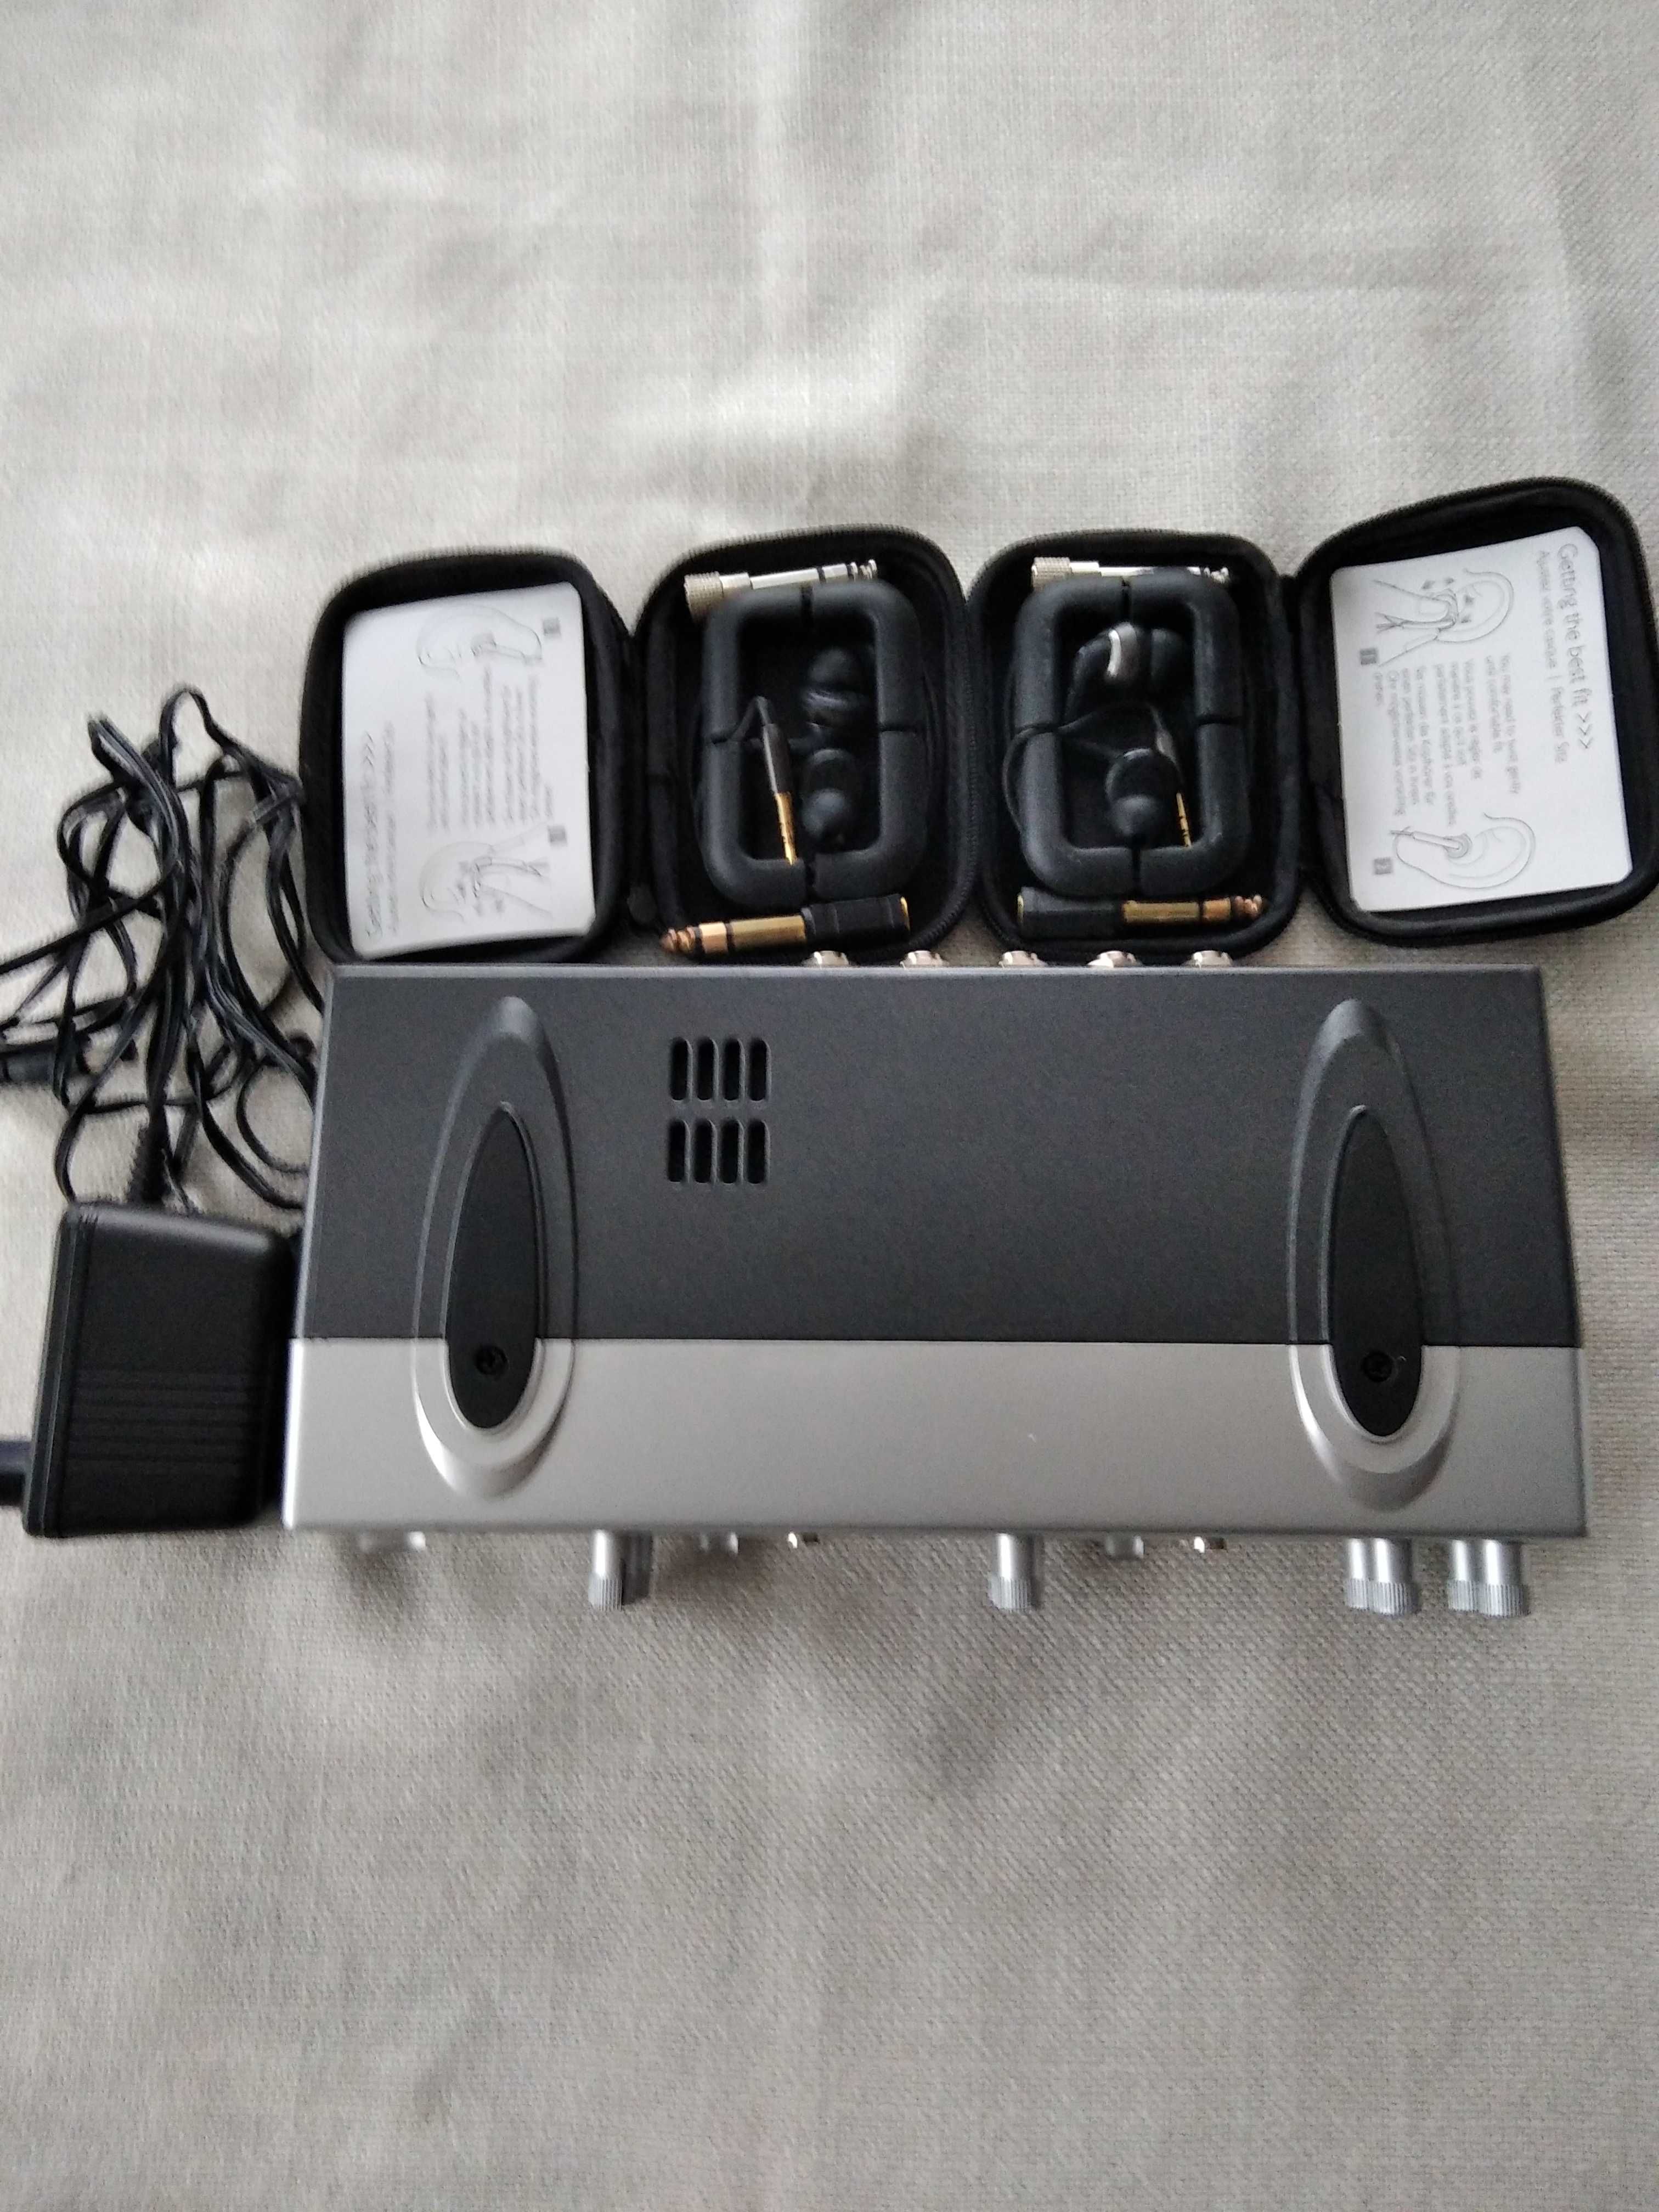 Wzmacniacz do słuchawek AMP 800 ultra-compack 4 channel.